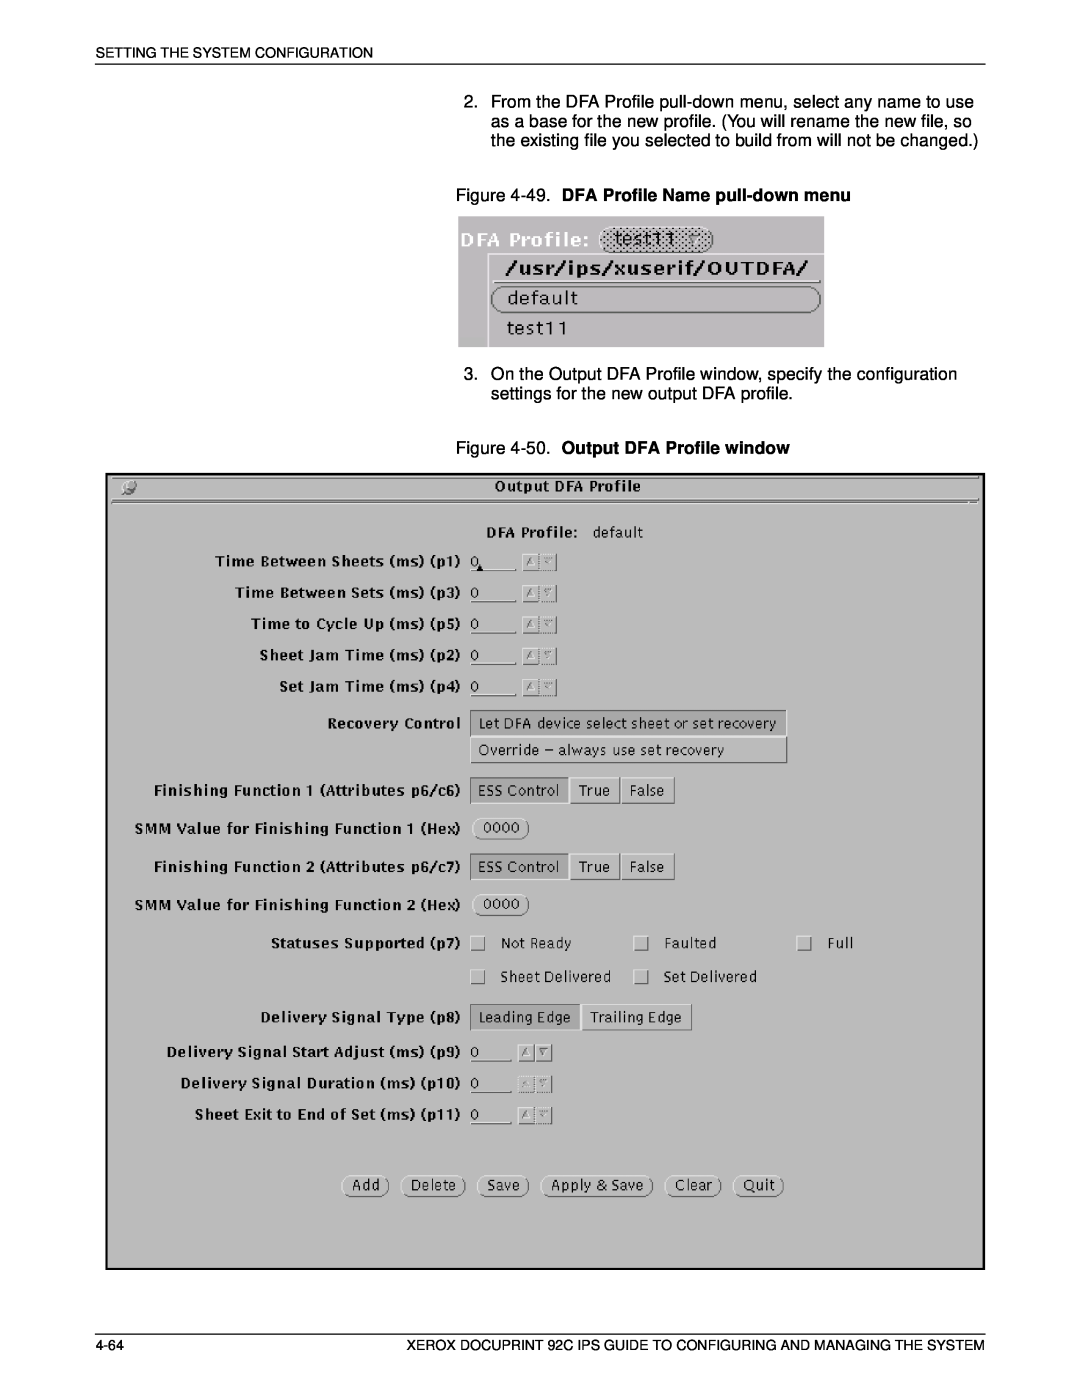 Xerox 92C IPS manual 49. DFA Profile Name pull-down menu, 50. Output DFA Profile window 